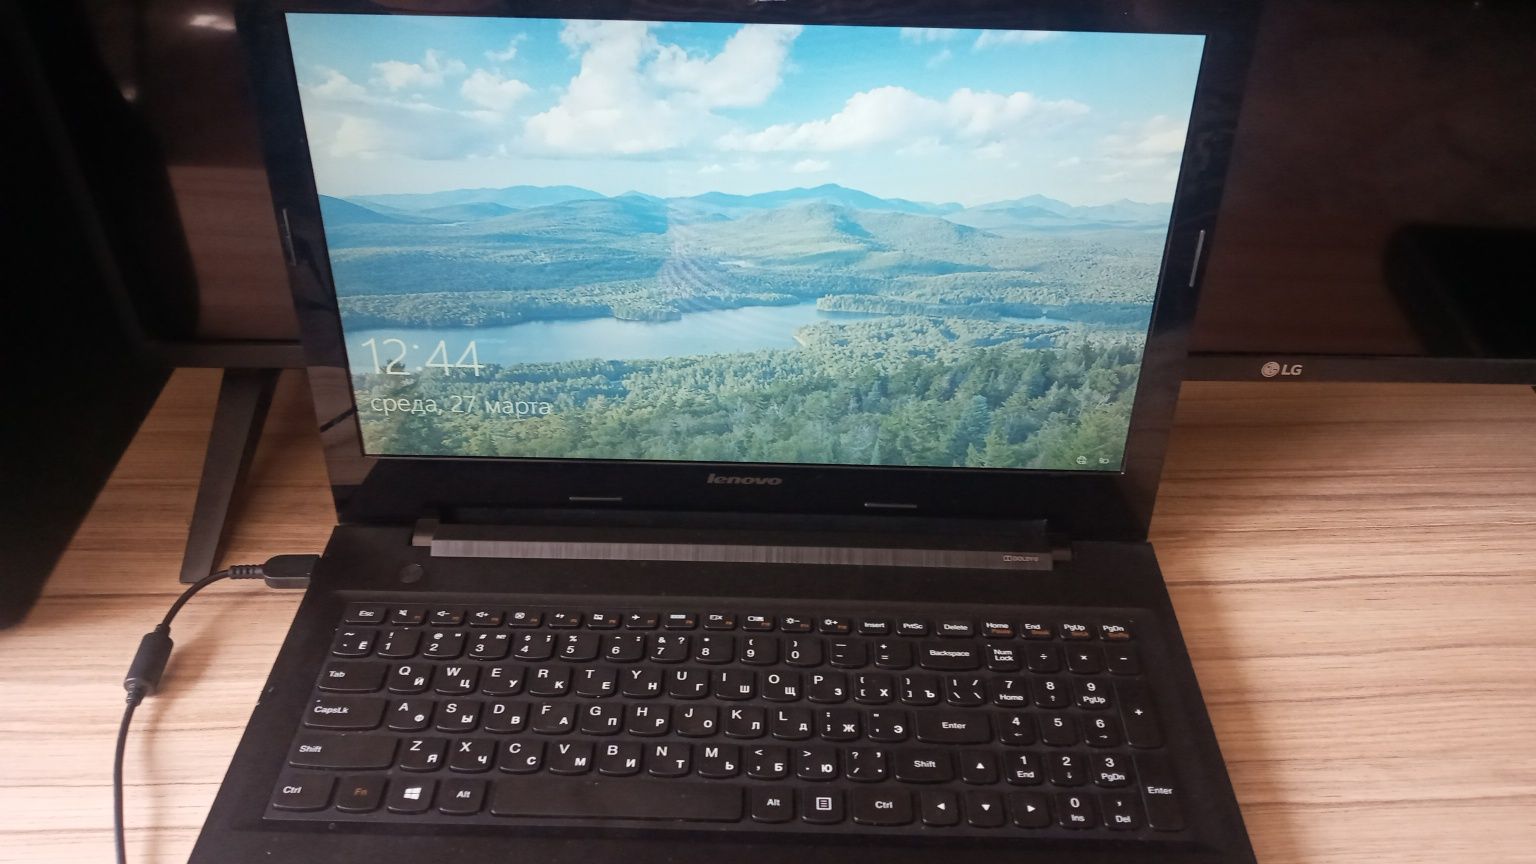 Продам ноутбук  Lenovo G50_30